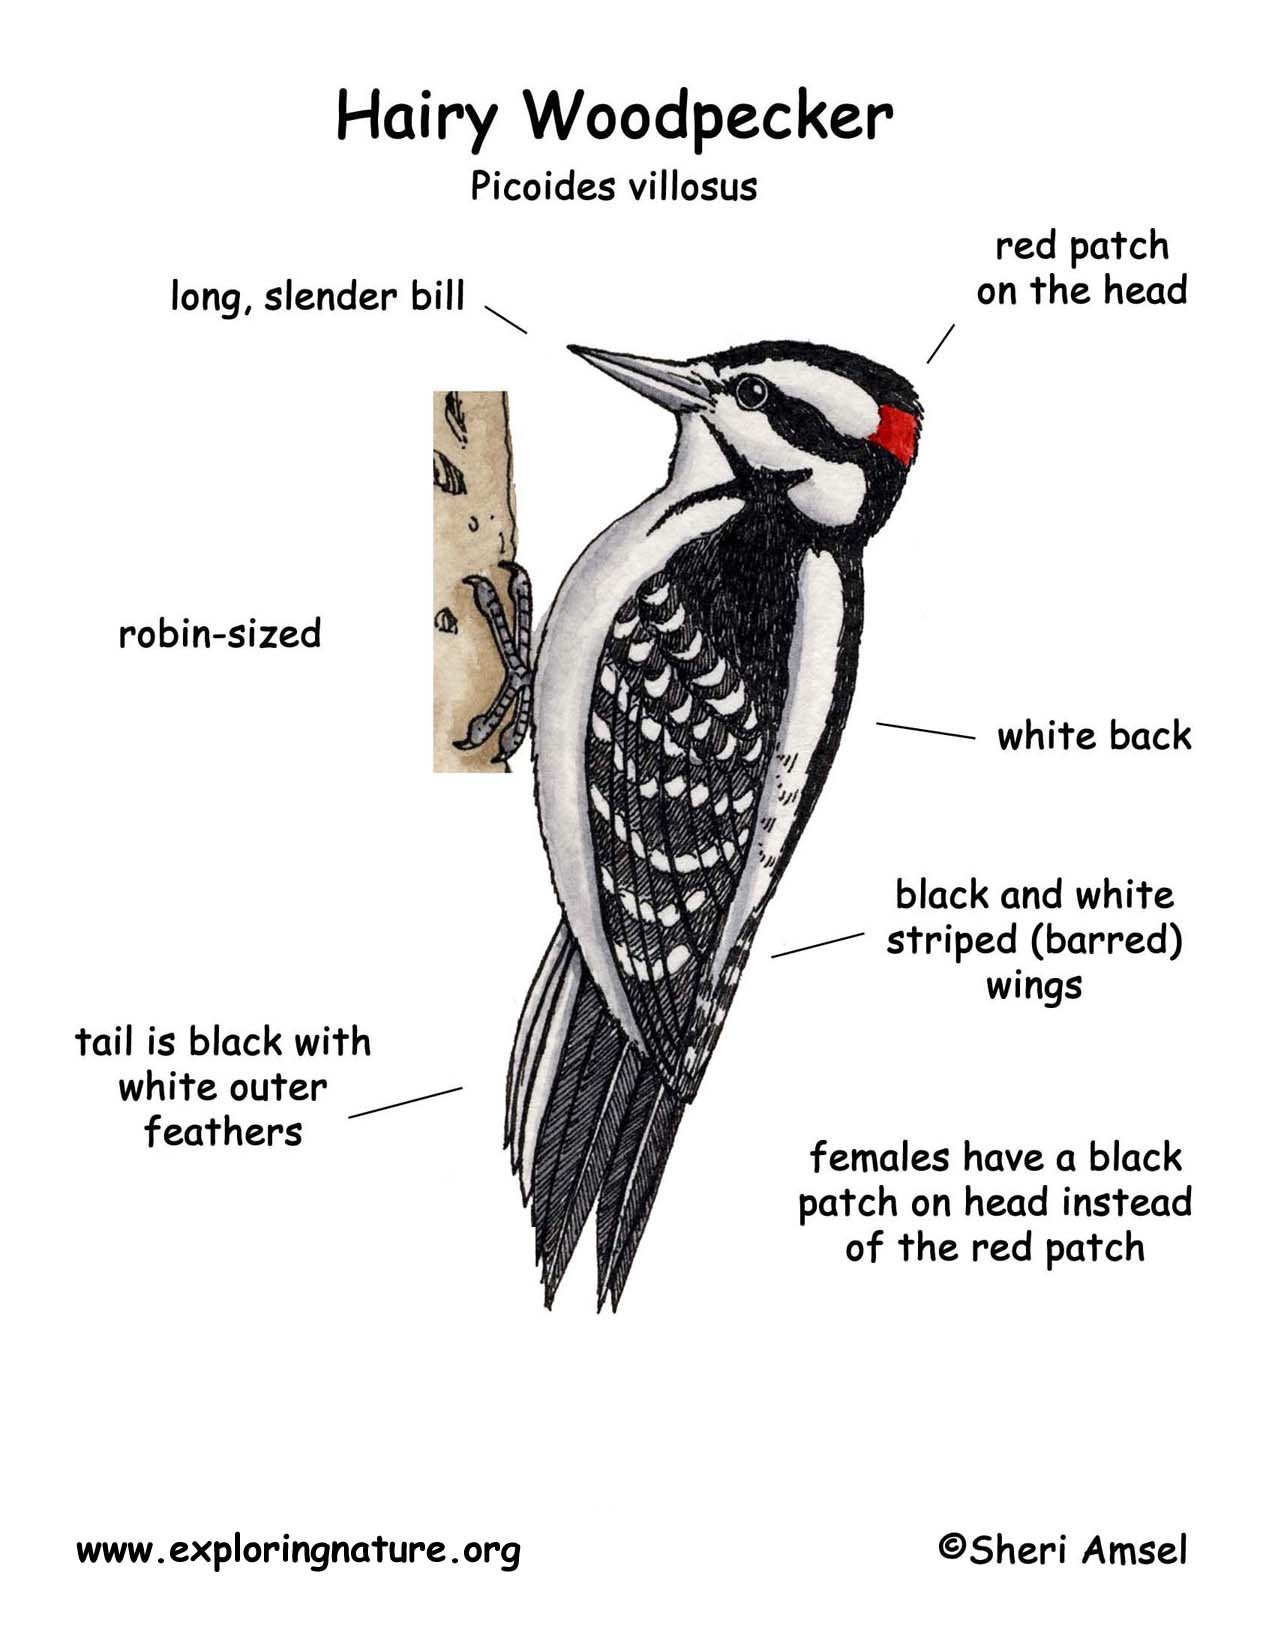 Woodpecker (Hairy)